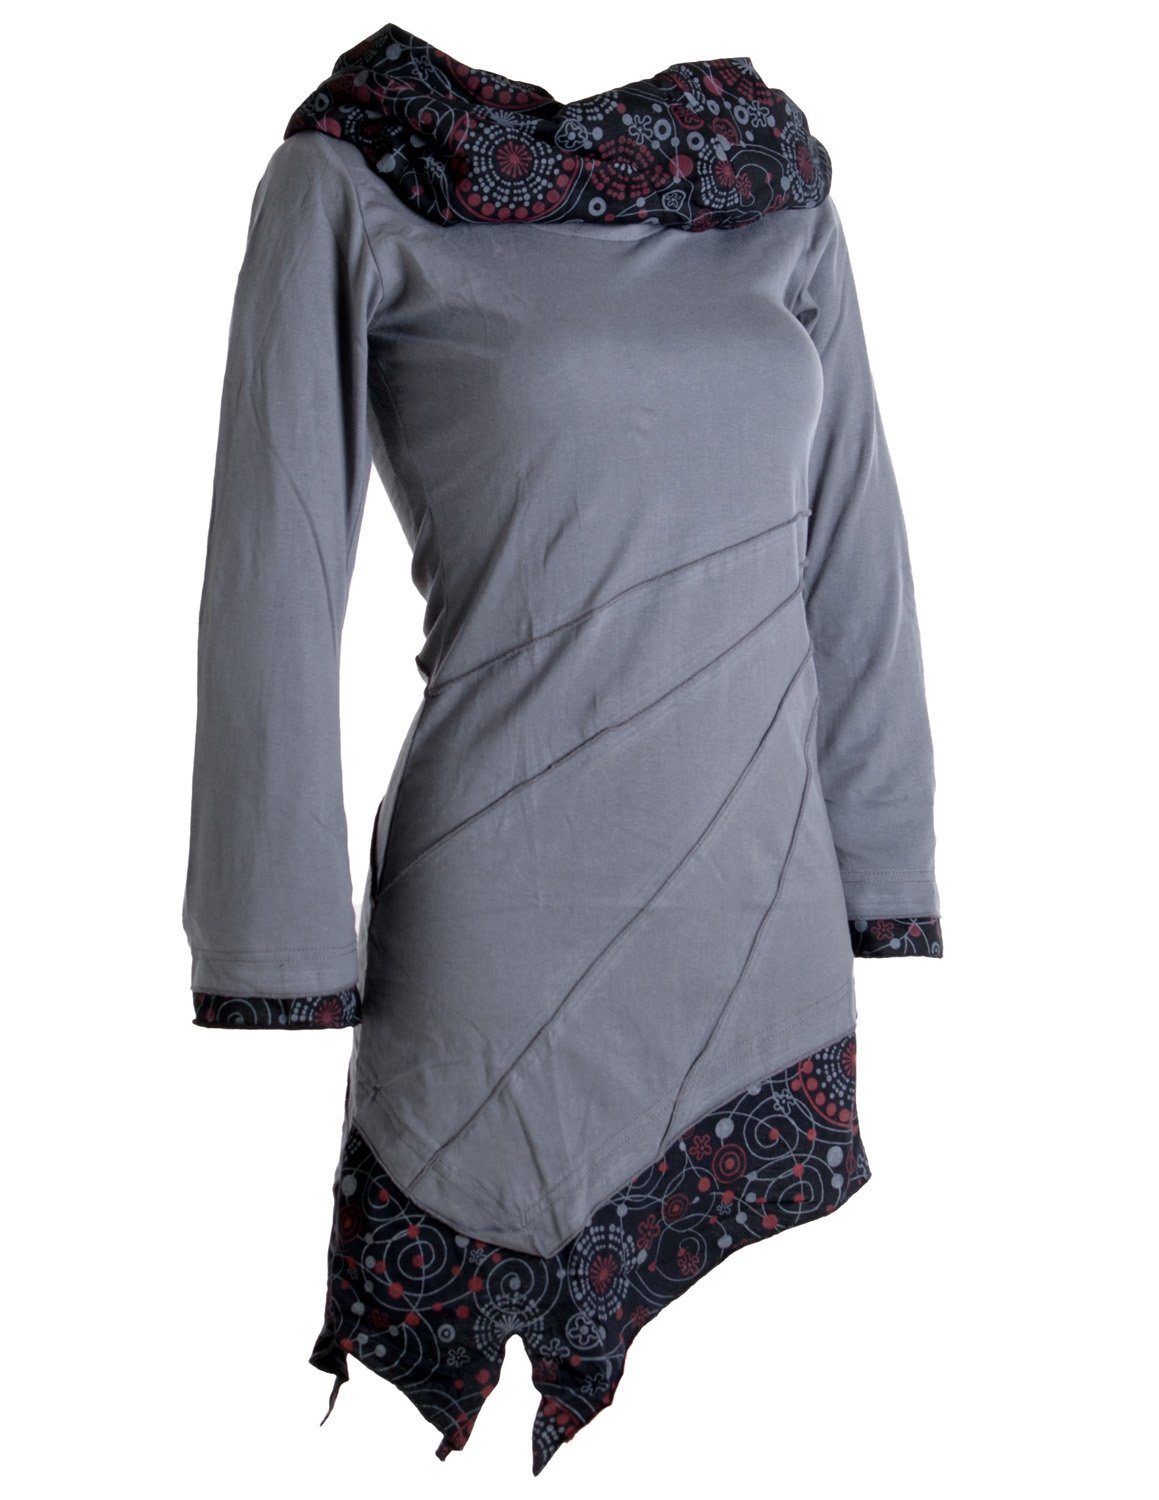 Vishes Jerseykleid aus Boho Ethno, Kleid grau Hippie, Asymmetrisches Schalkragen mit Baumwolle Style Goa